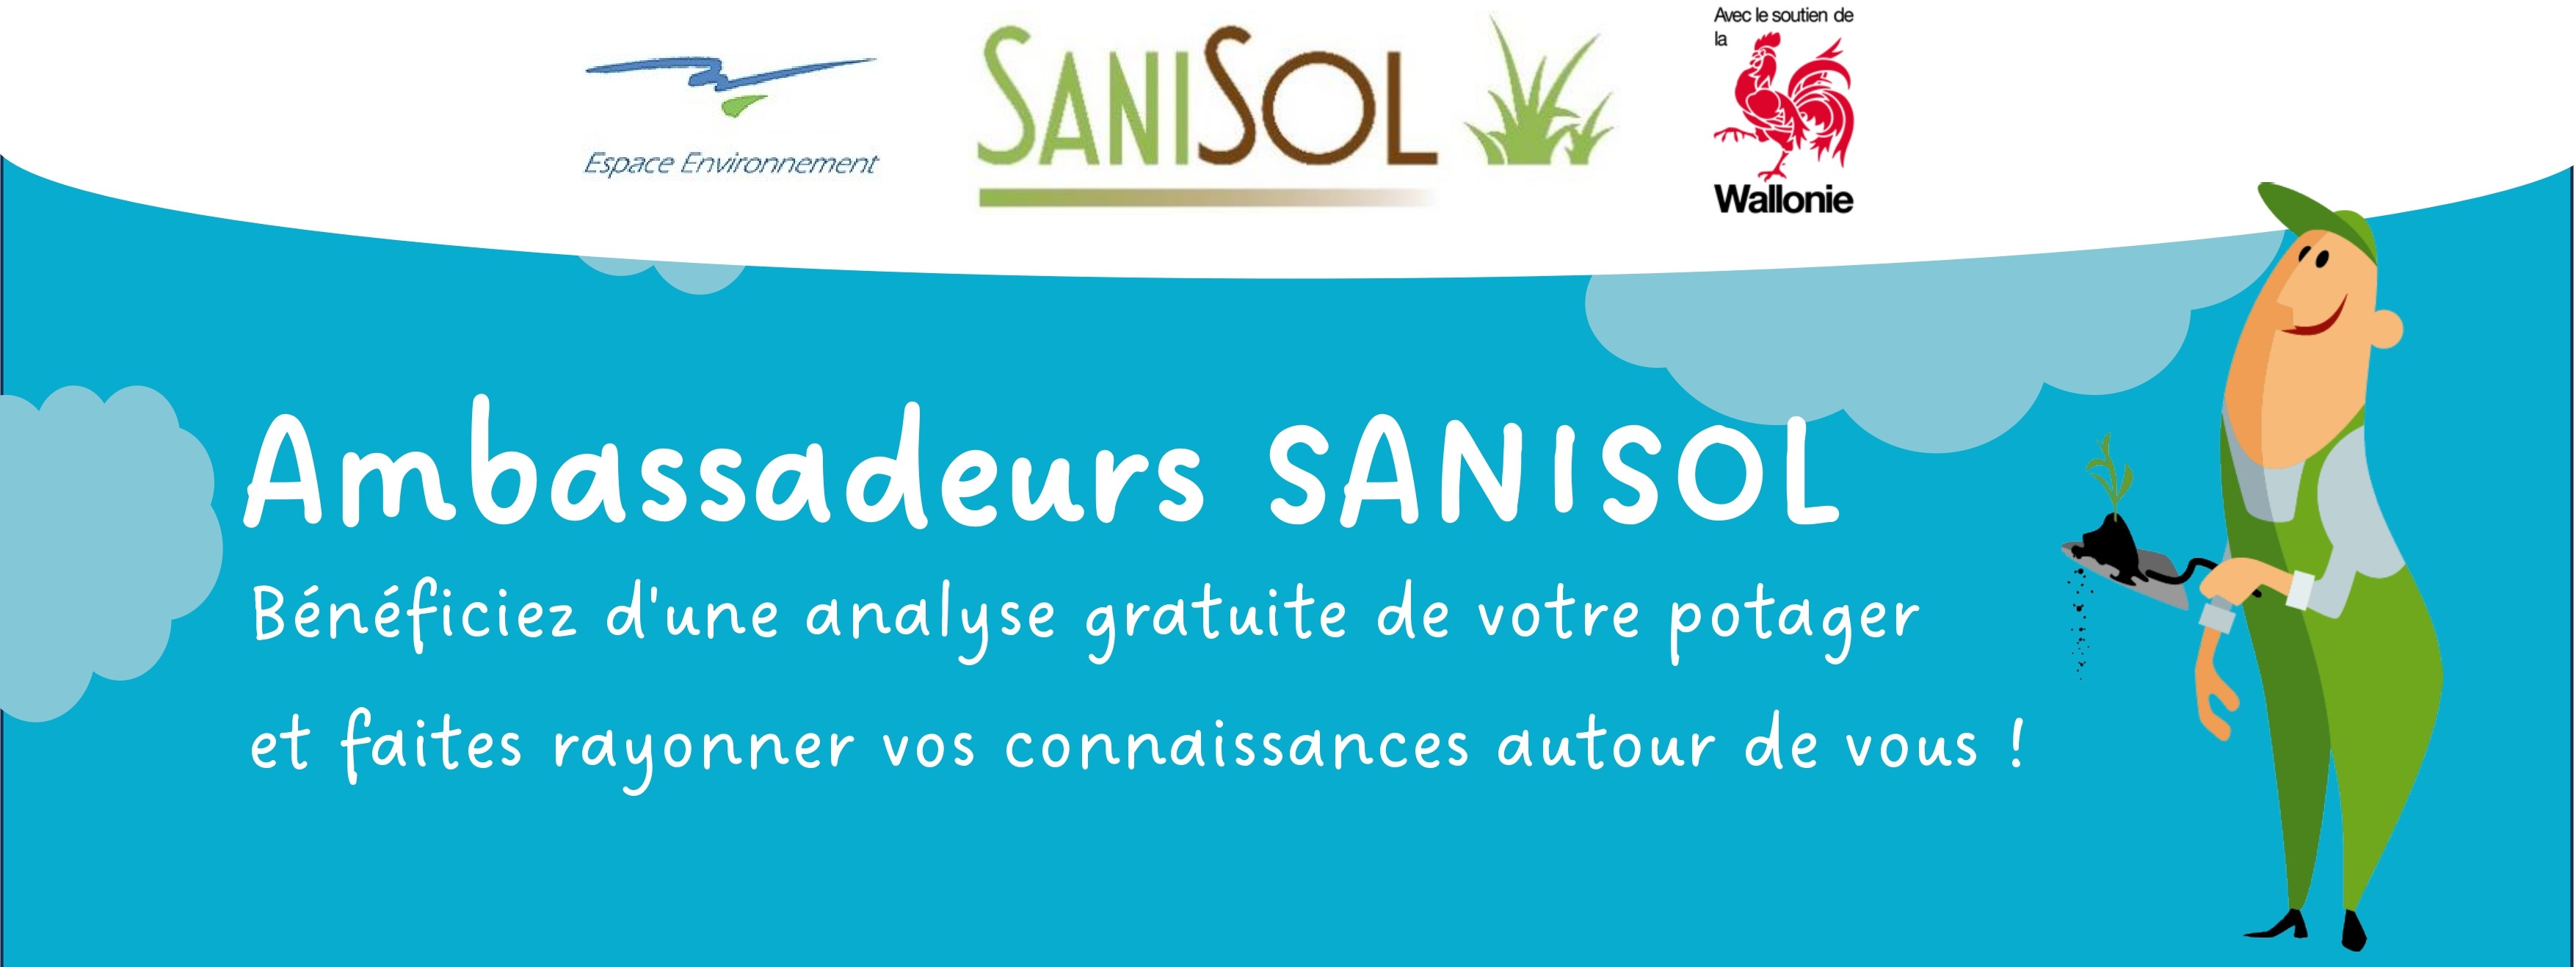 Devenez ambassadeur SANISOL, sensibilisez votre entourage et bénéficiez d’une analyse gratuite de votre potager !